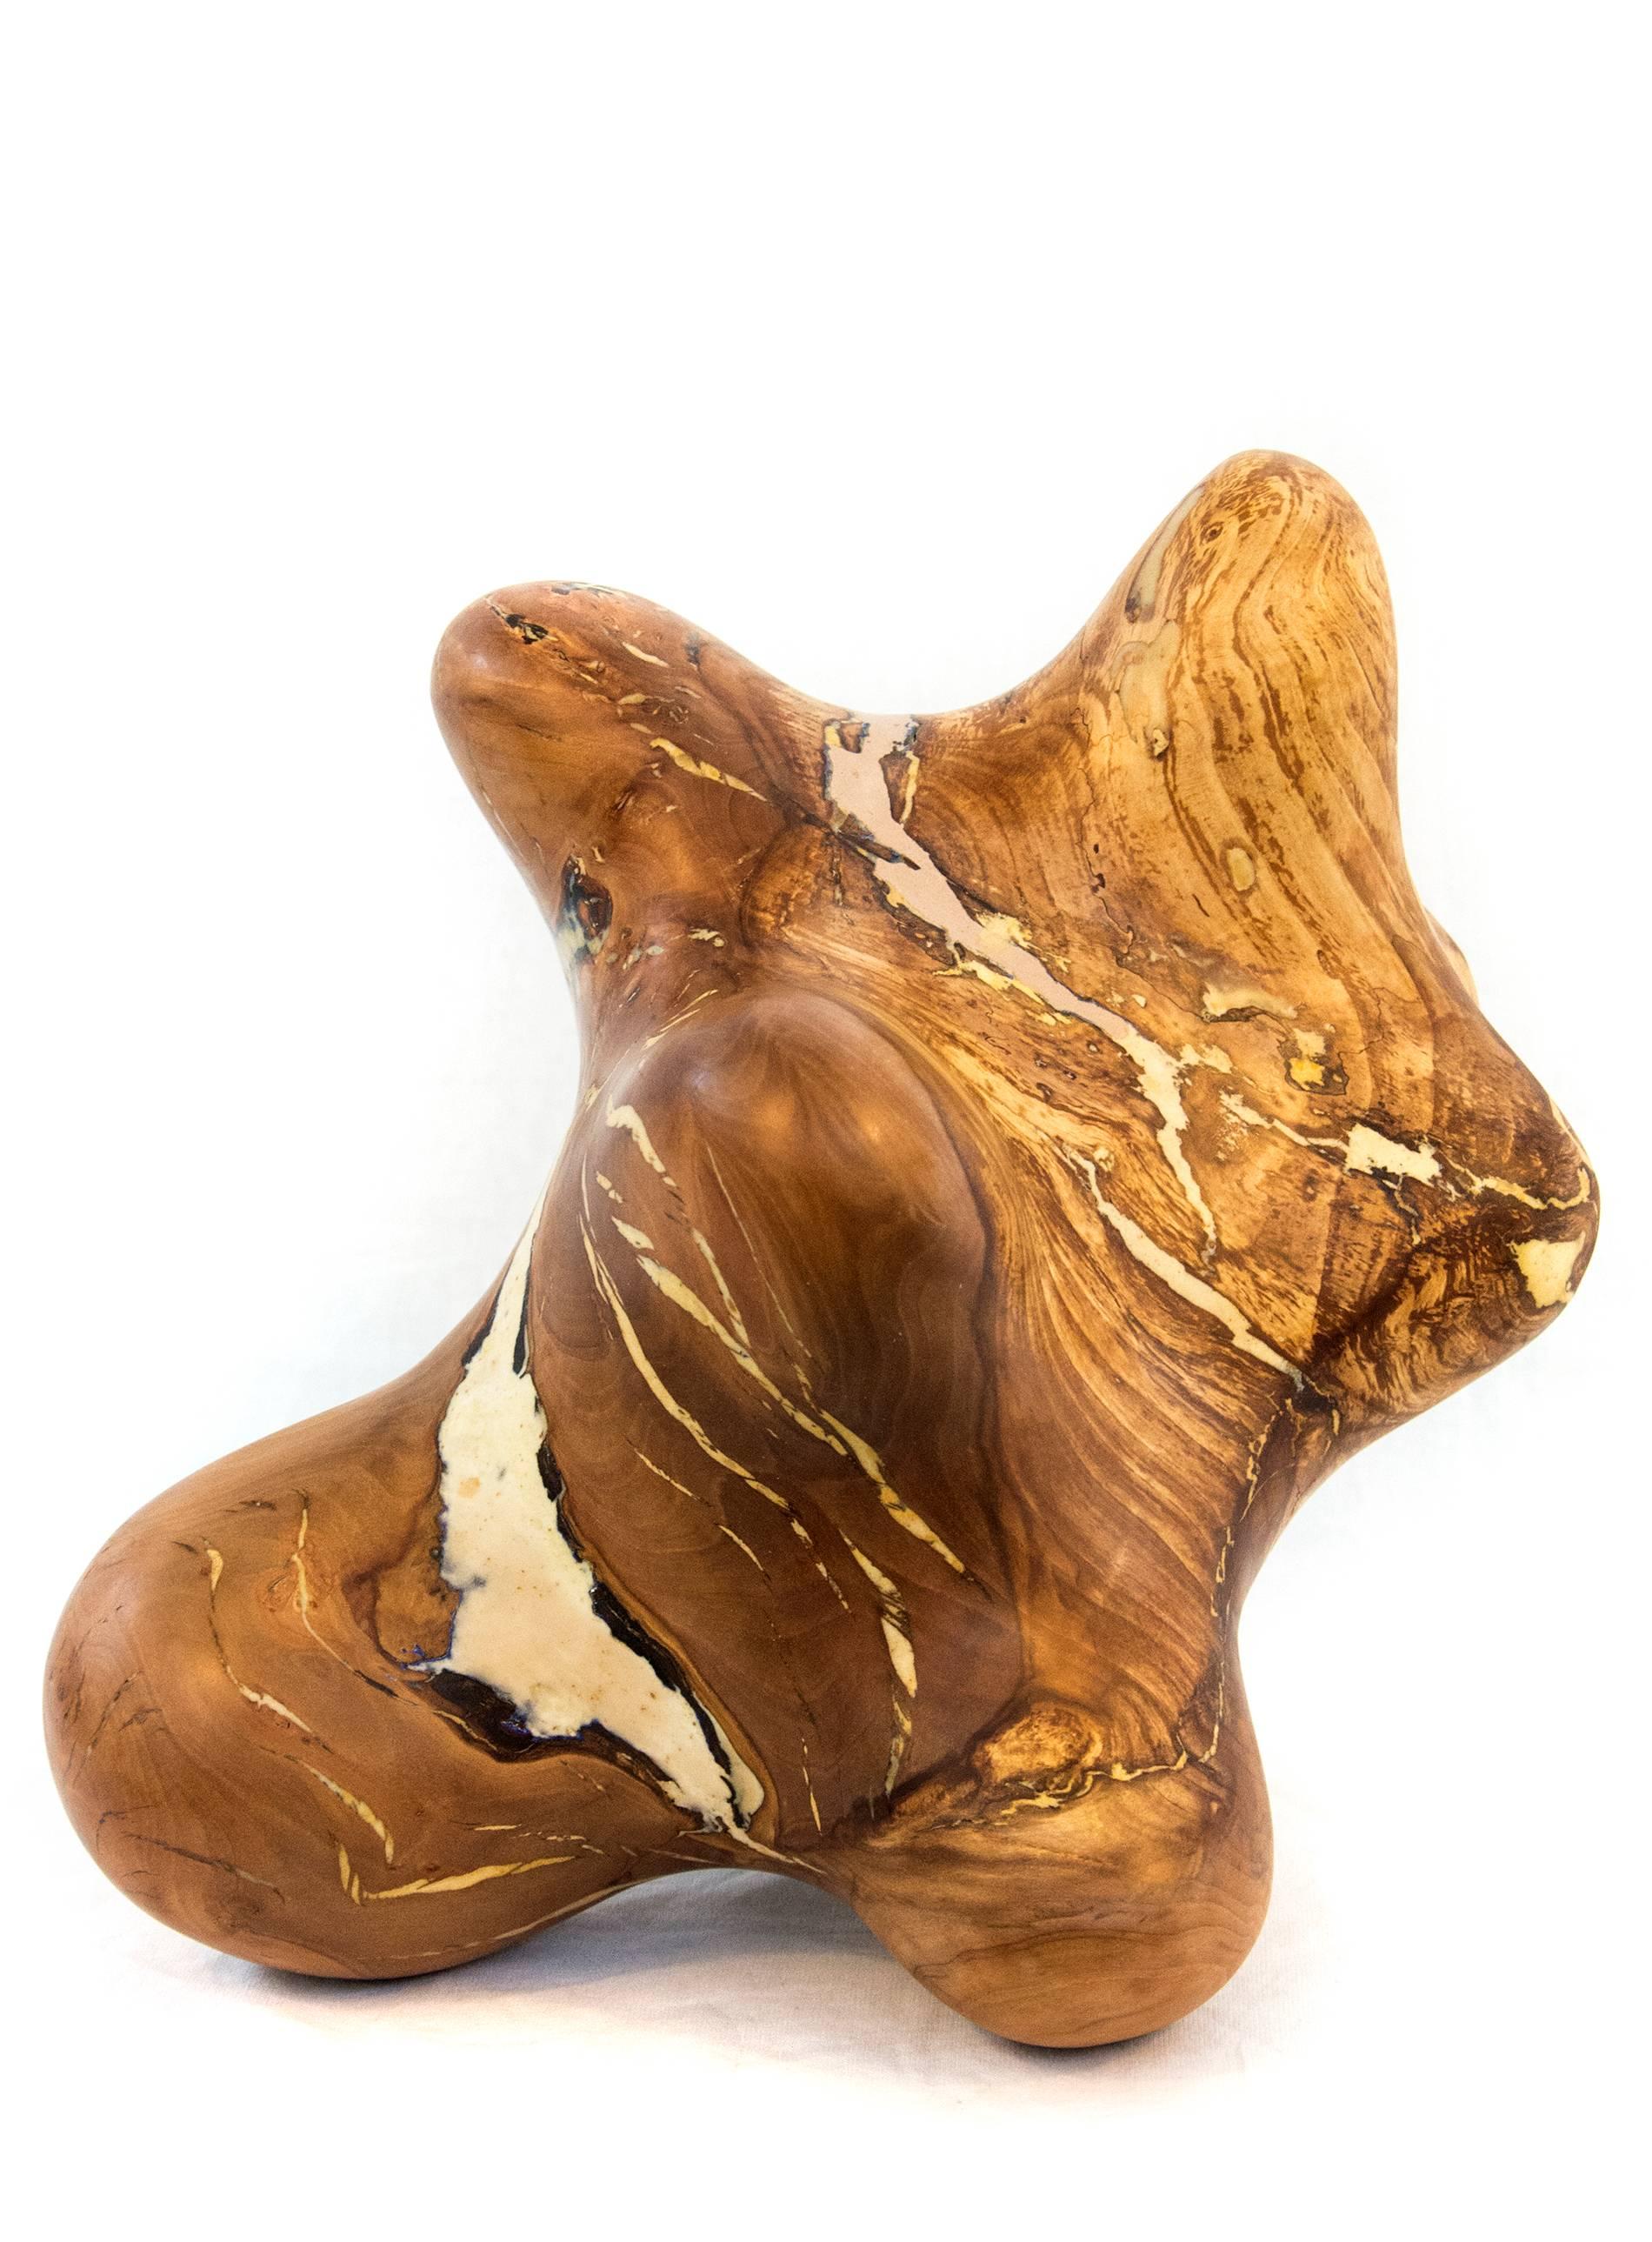 Windfall-Serie Nr. 06 – abstrakte geschnitzte Skulptur aus Naturholz, glatt, poliert – Sculpture von Shayne Dark